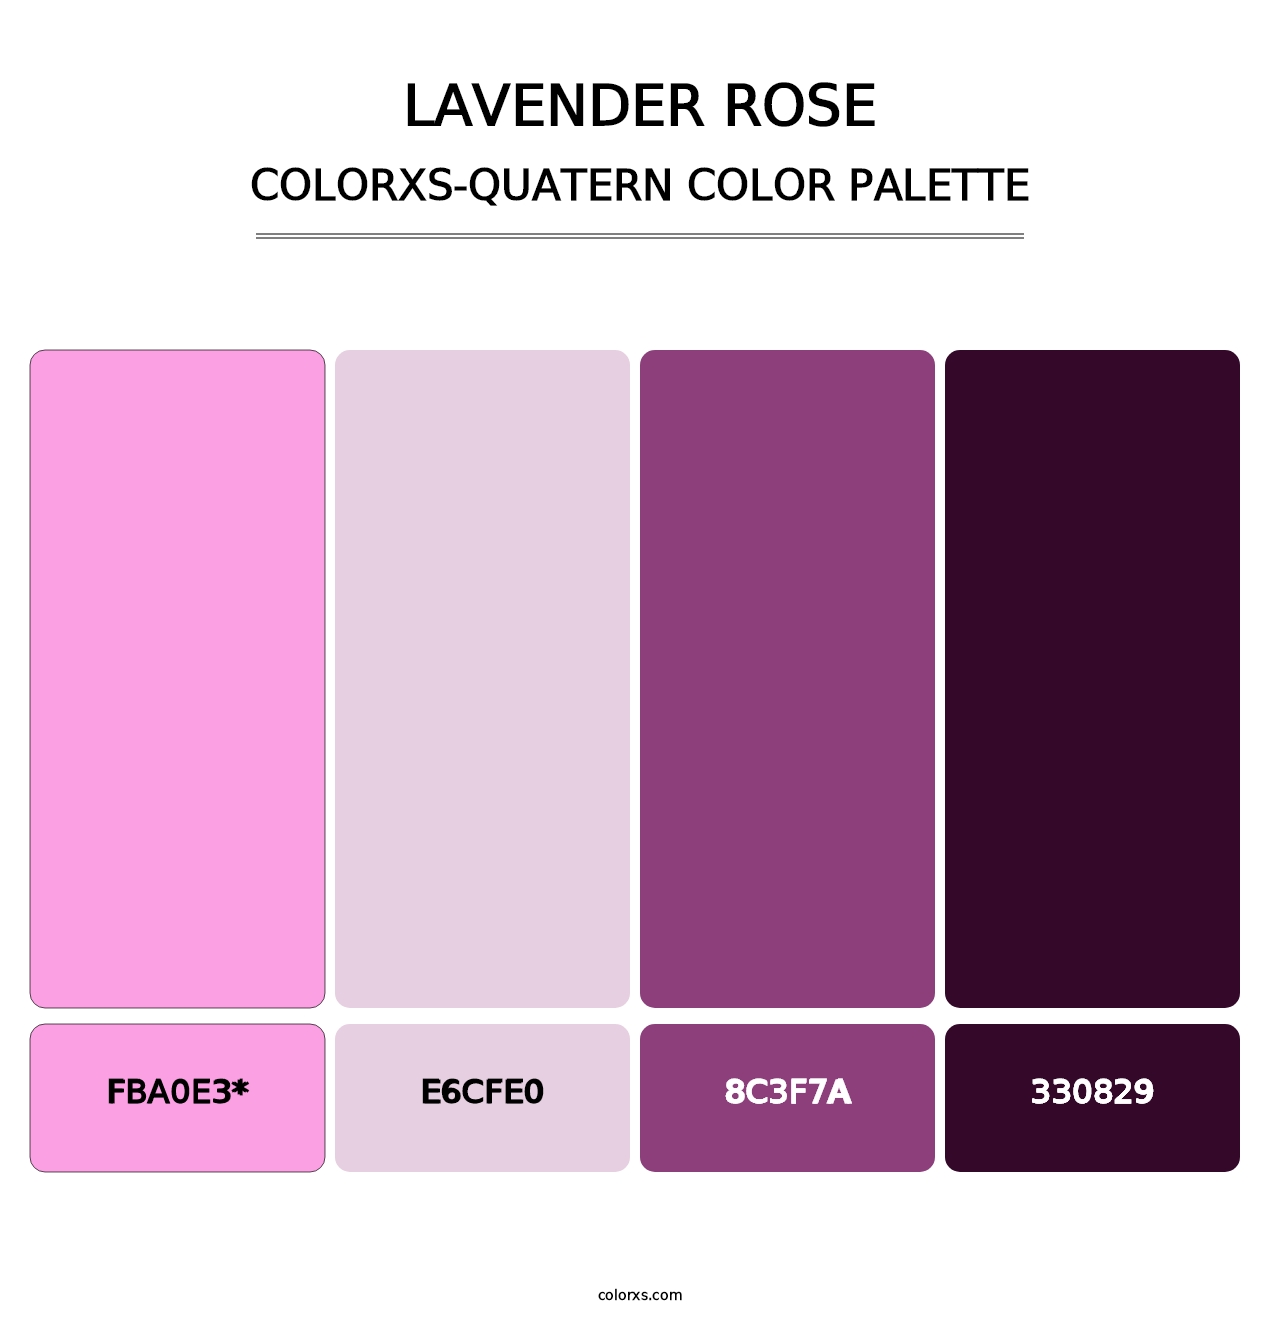 Lavender Rose - Colorxs Quatern Palette